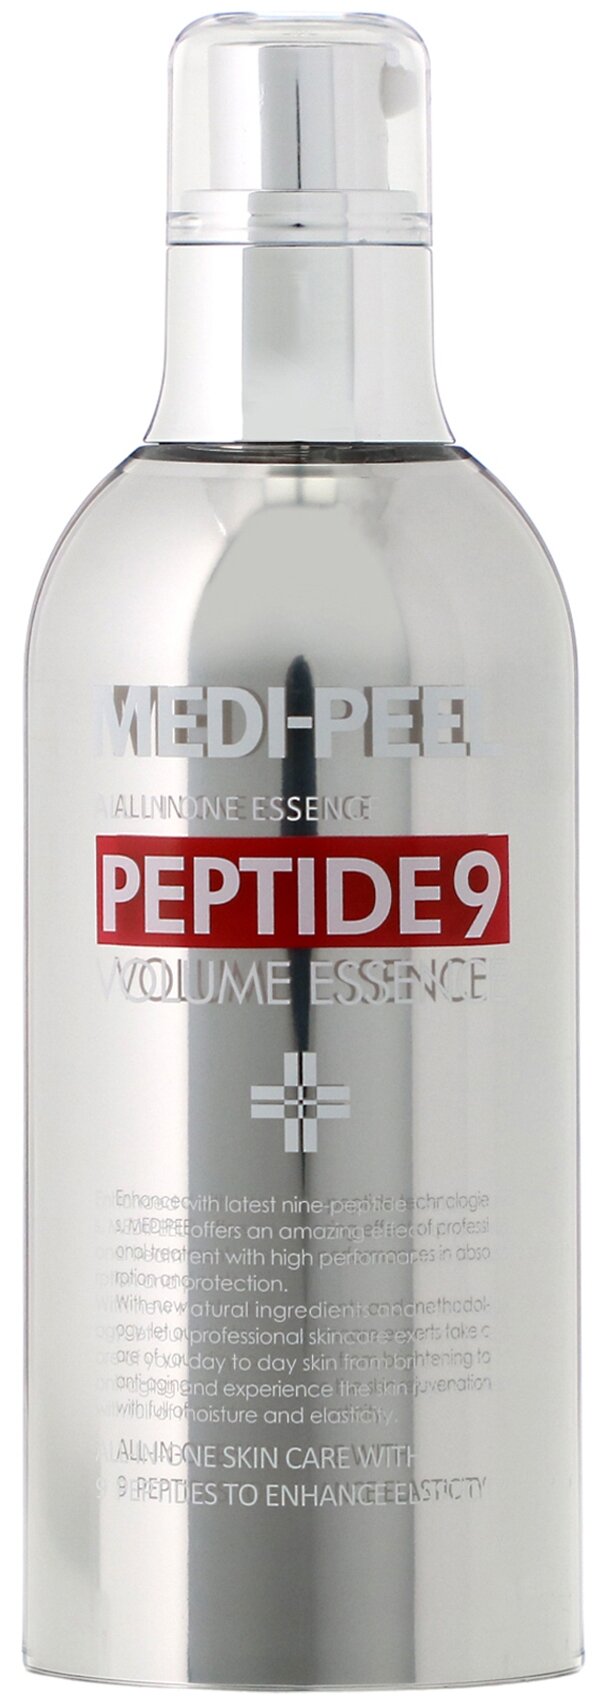 Кислородная эссенция с пептидным комплексом Peptide 9 Volume Essence Medi-Peel, 100 мл